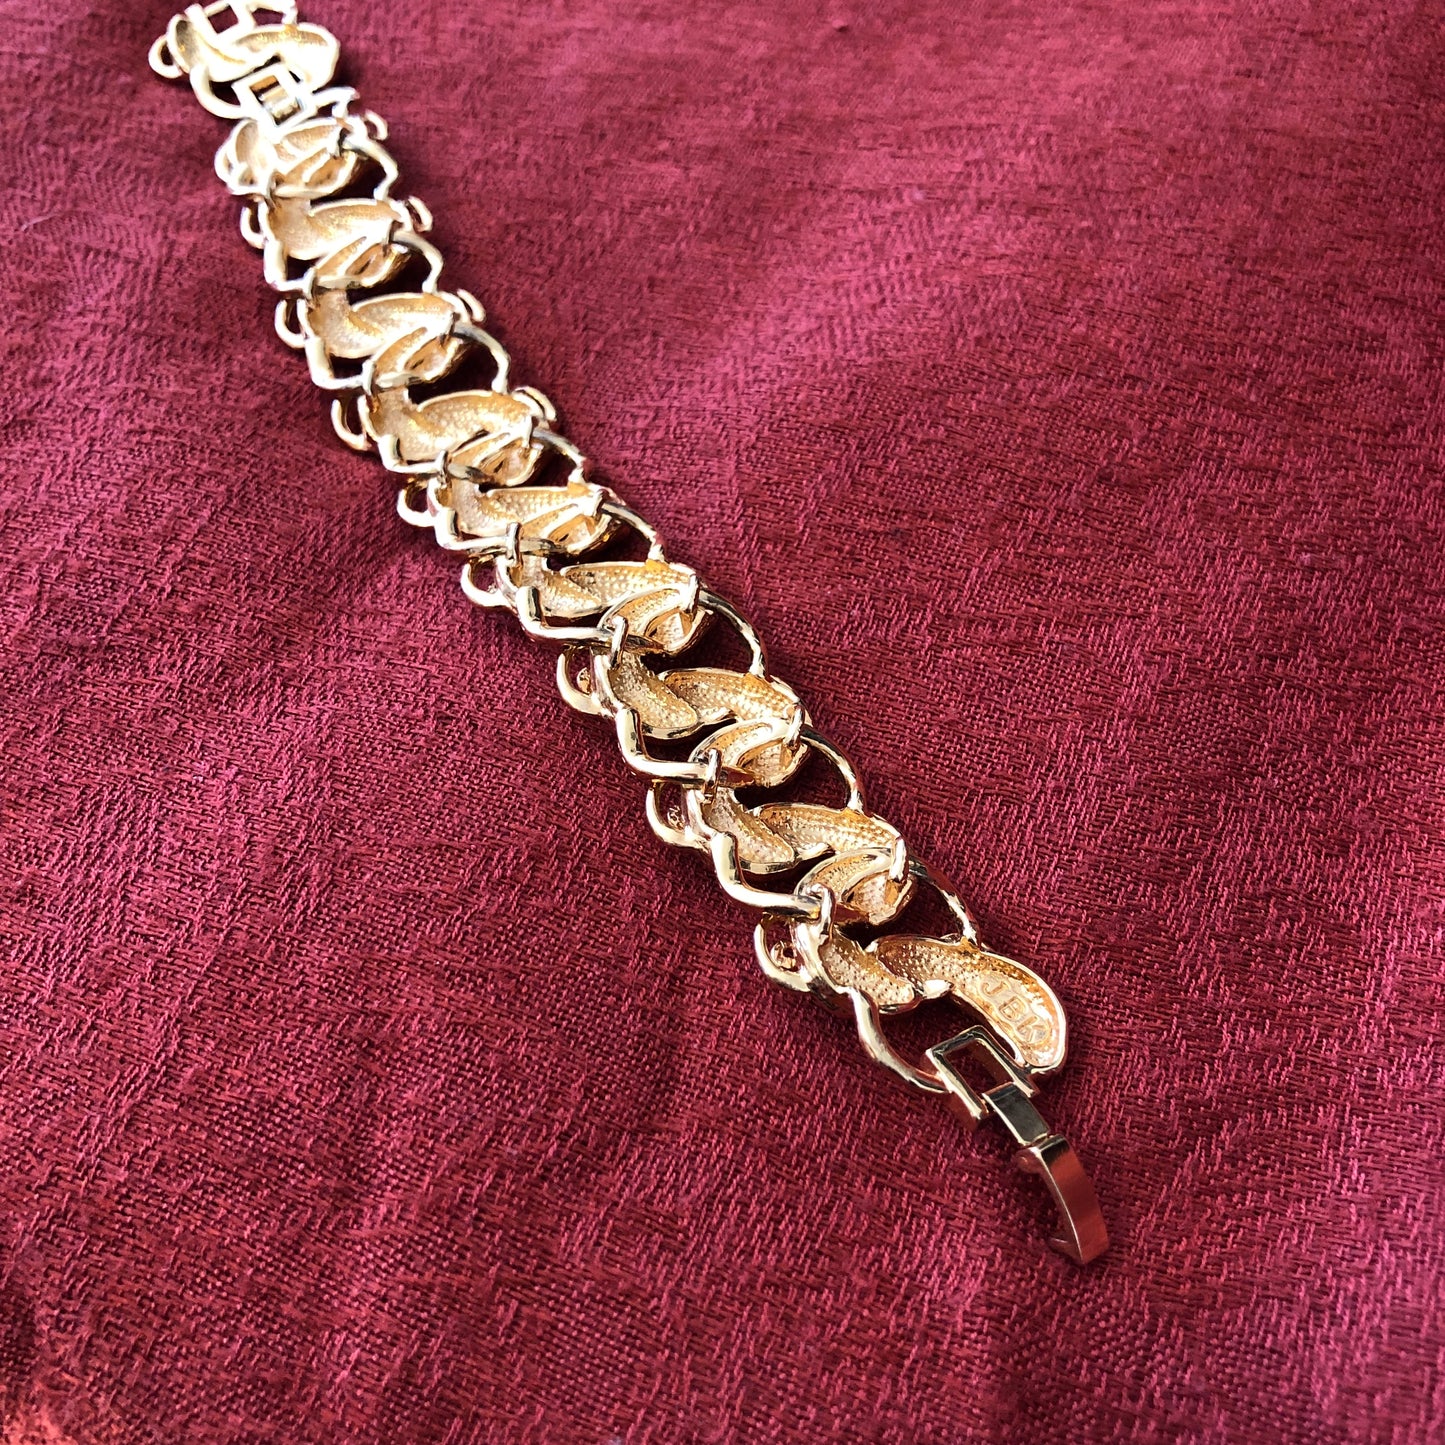 JBK Jacqueline Kennedy 18k Gold Plated Ram's Head Bracelet by Camrose & Kross Bracelet